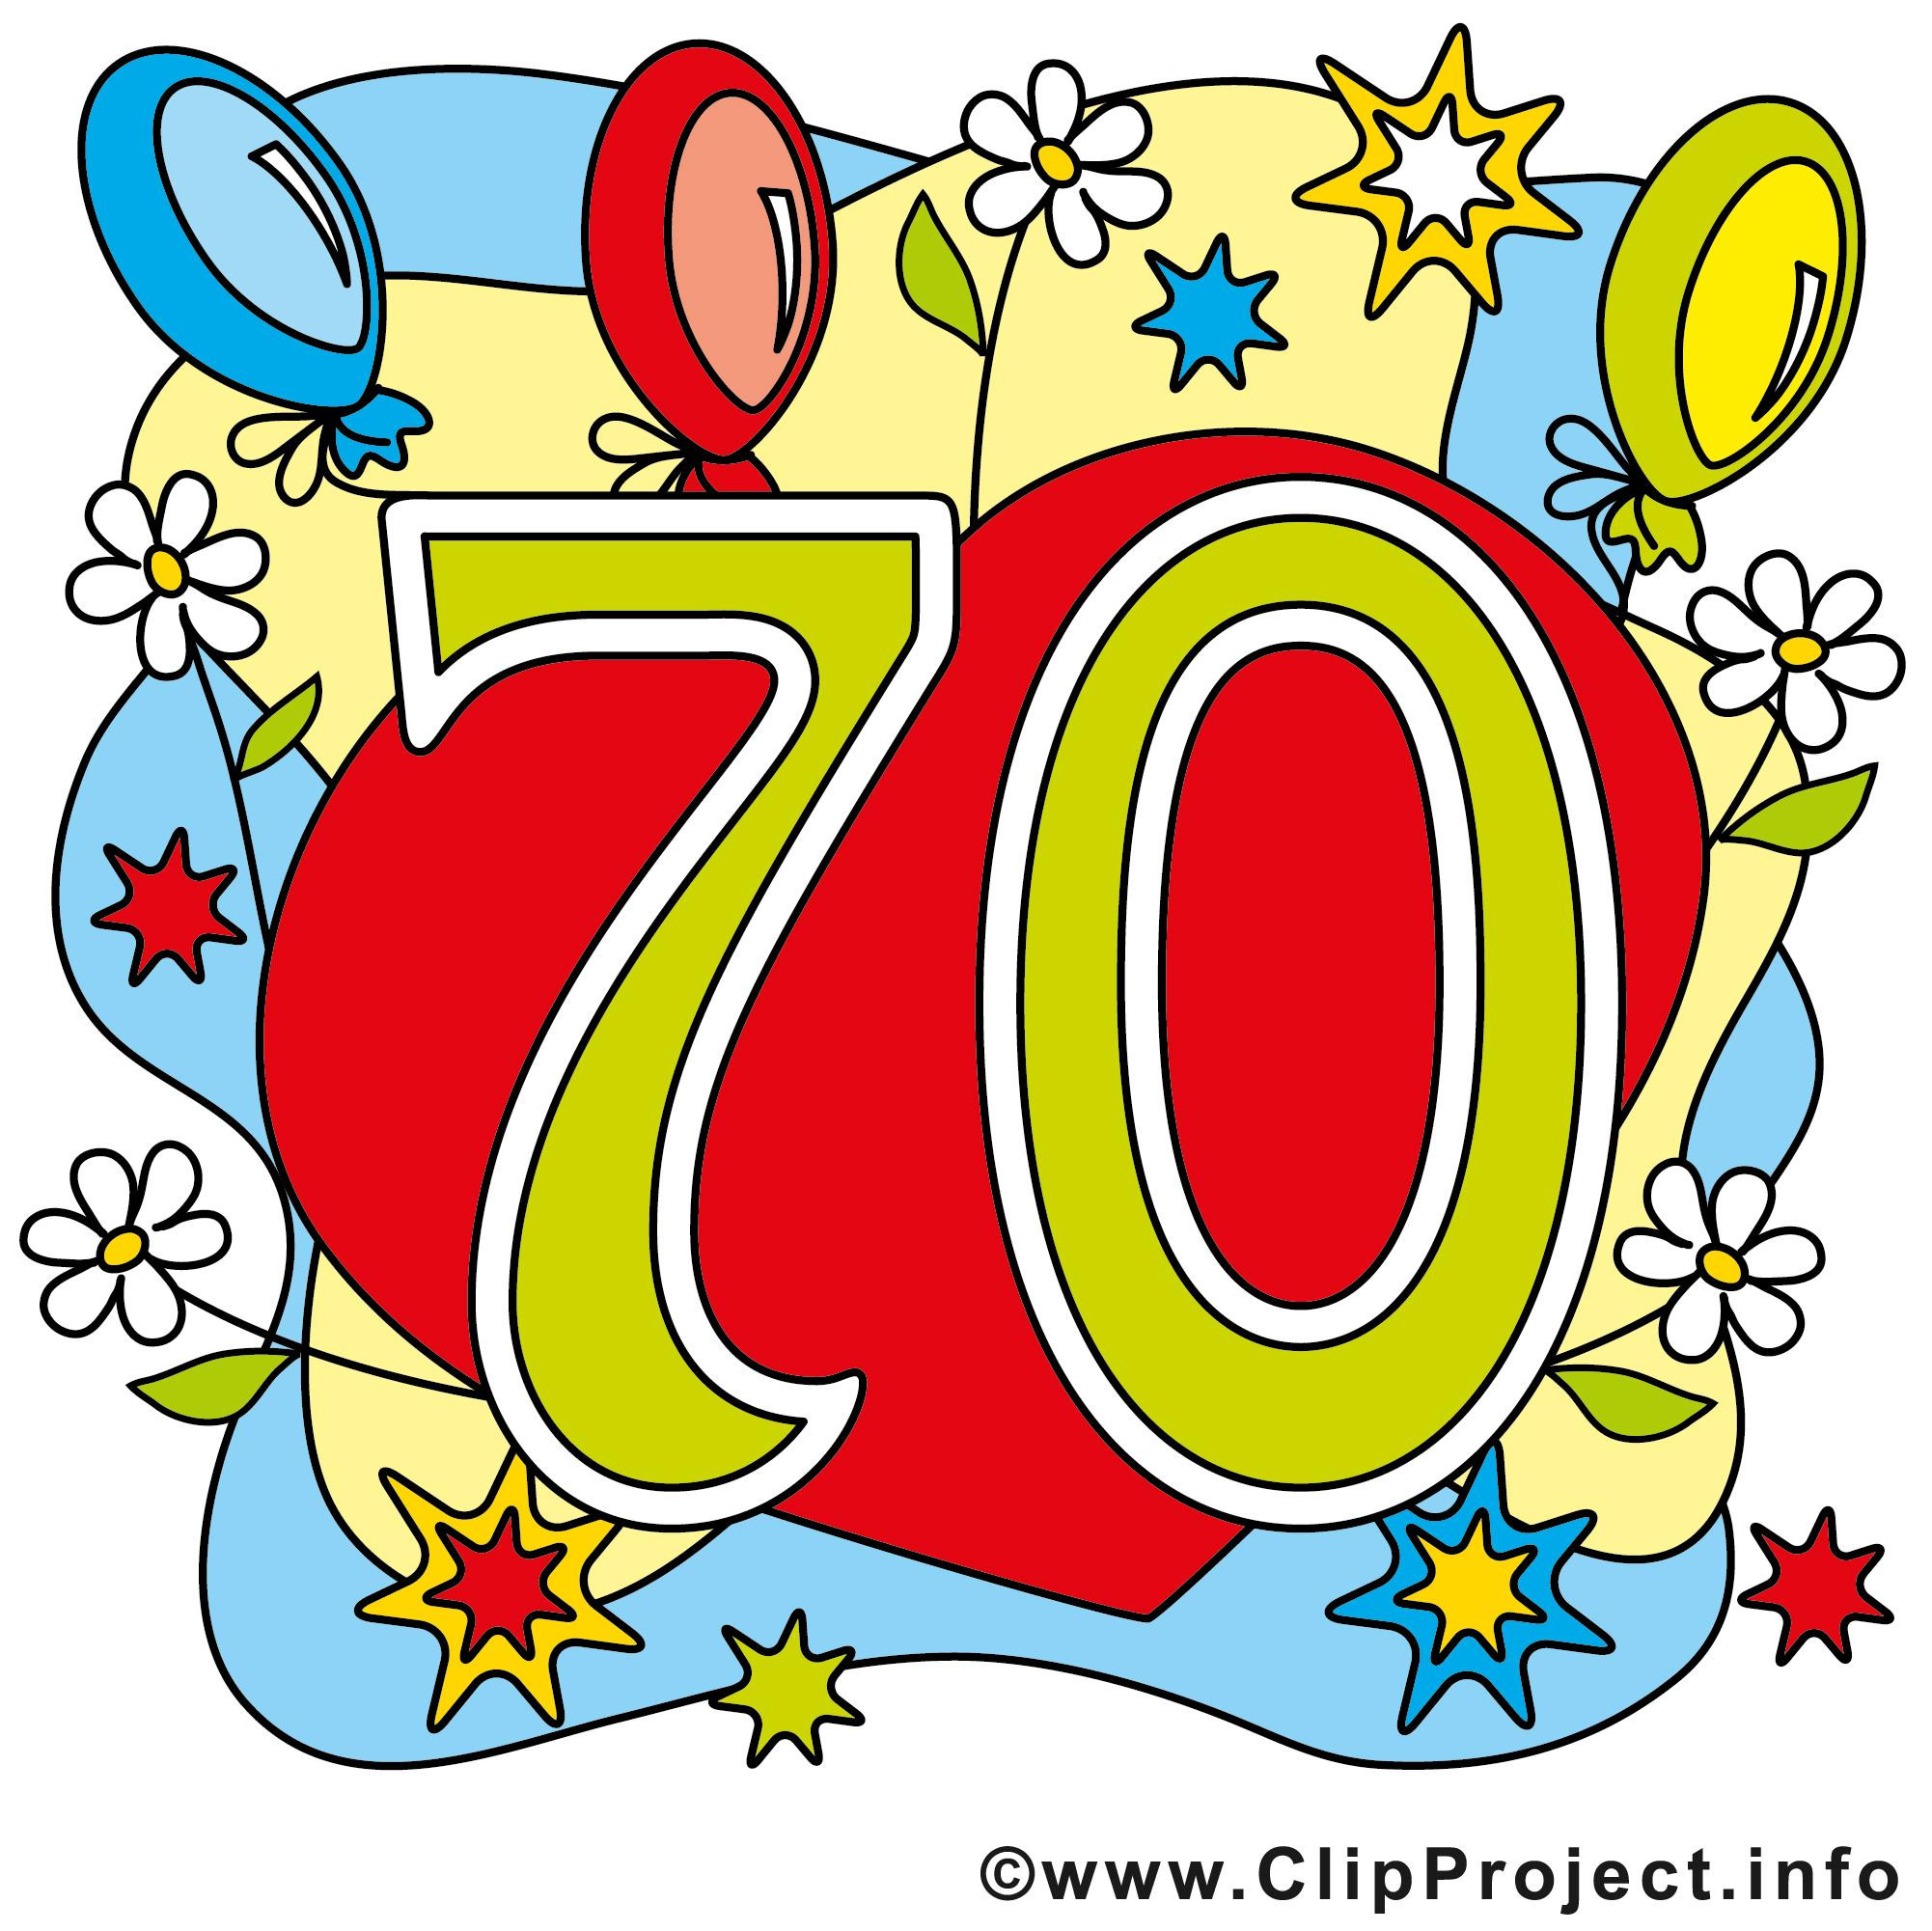 Geburtstagswünsche Zum 70. Geburtstag
 Einladung 70 Geburtstag